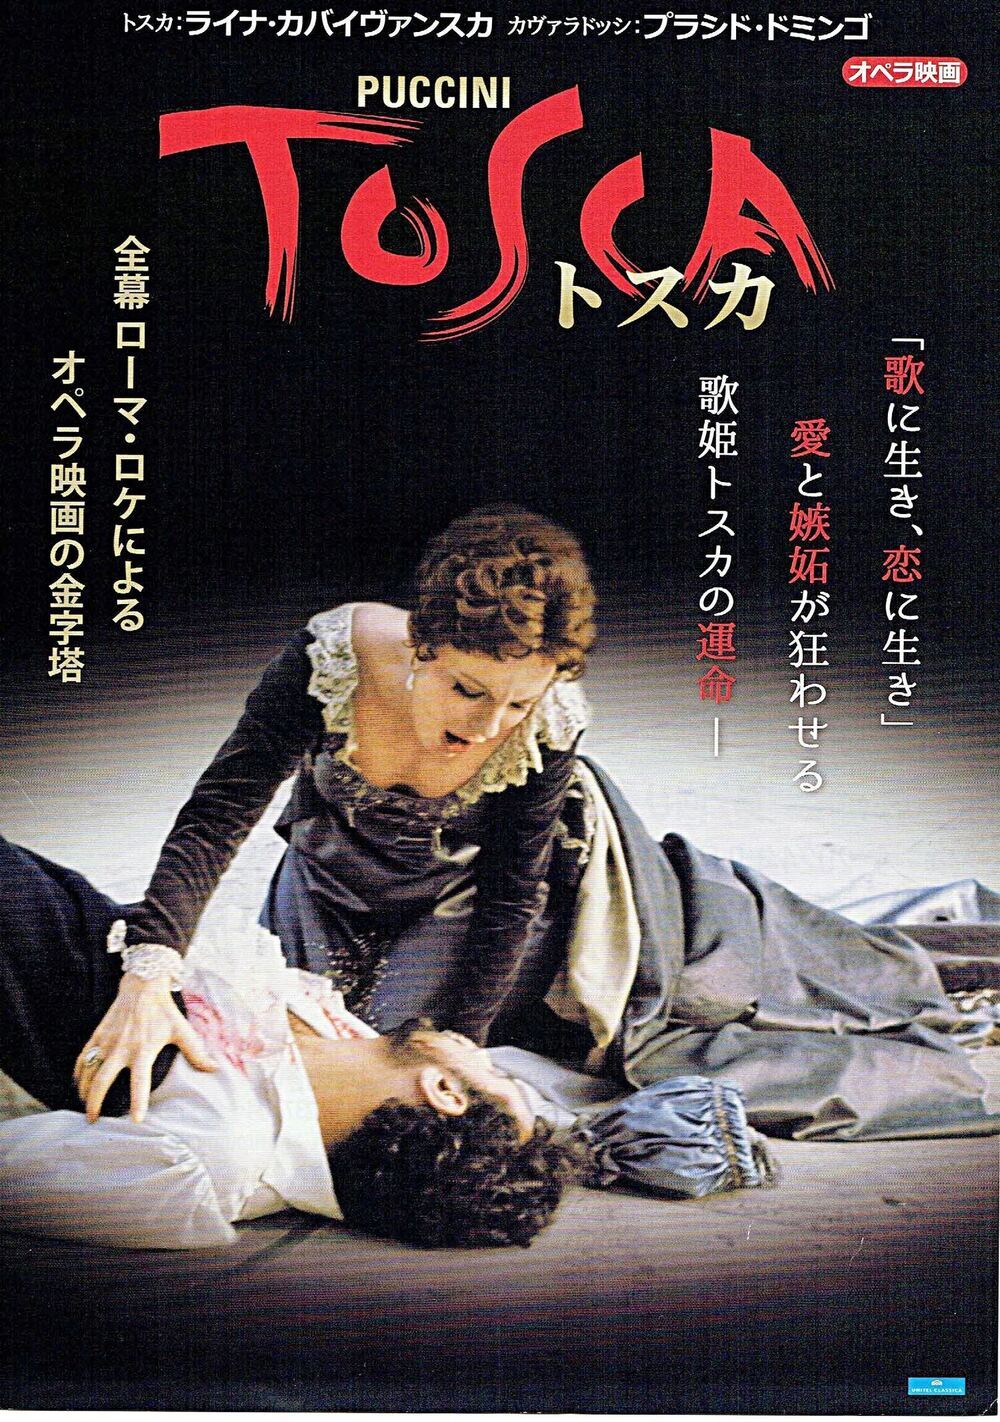 TOSCCA トスカ「歌に生き、恋に生き」オペラ映画